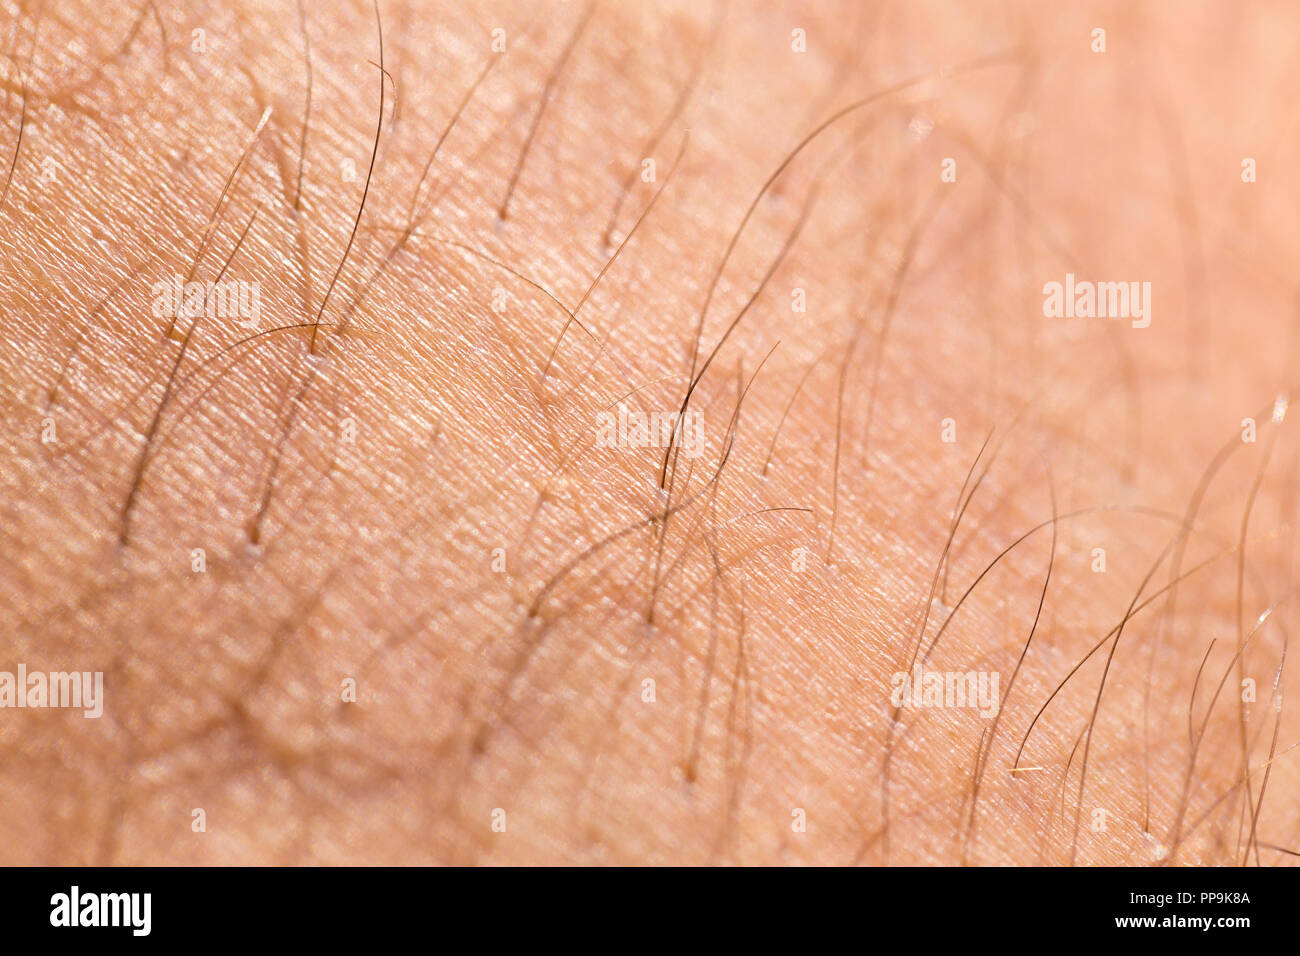 Détail de la peau humaine avec les cheveux, close-up Banque D'Images